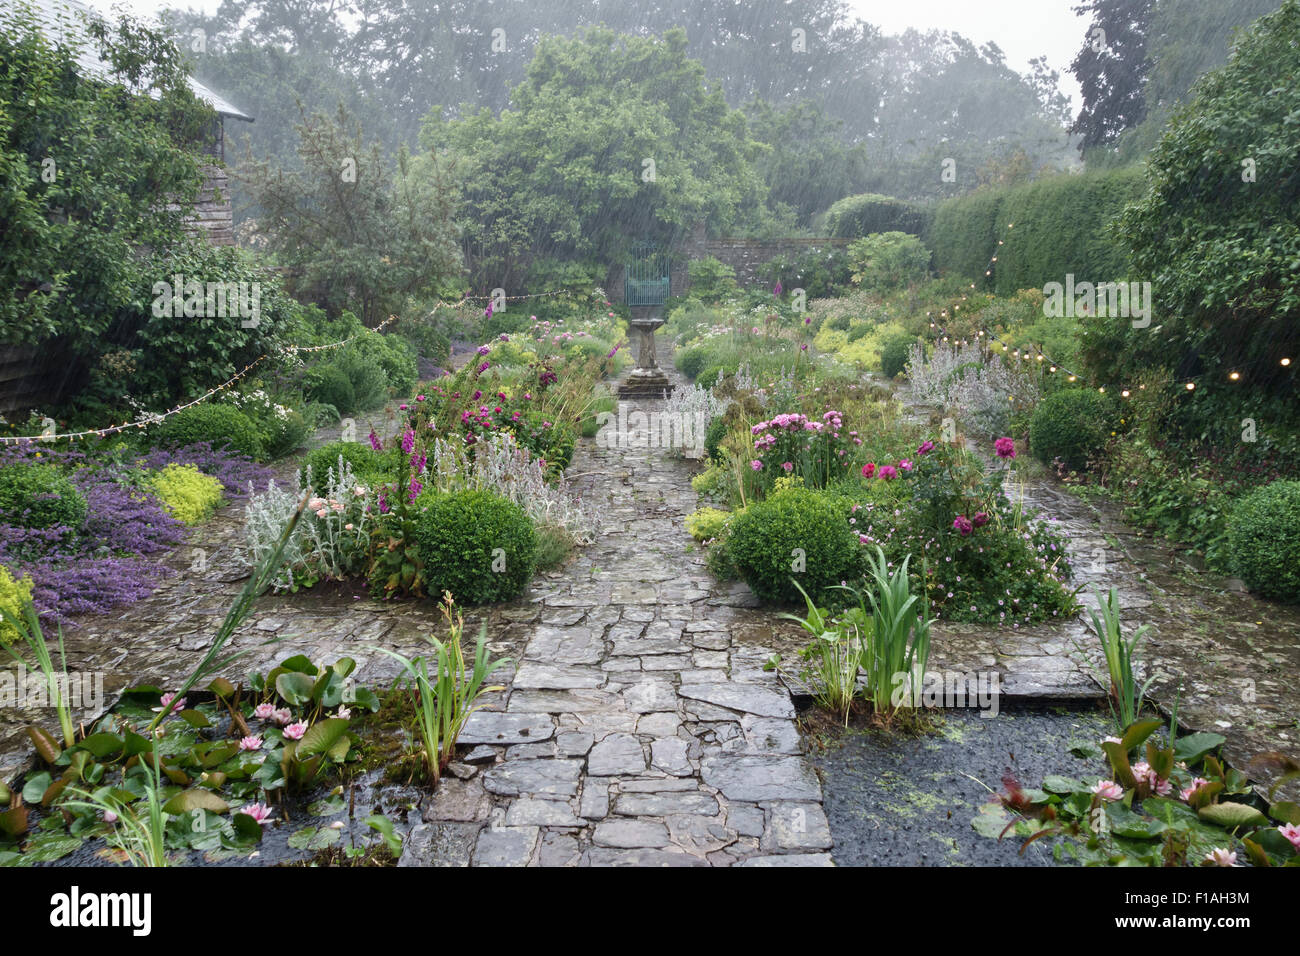 Pays de Galles, Royaume-Uni. Un jardin est baignée par de fortes pluies pendant une partie de la zone humide de l'été 2015 Banque D'Images